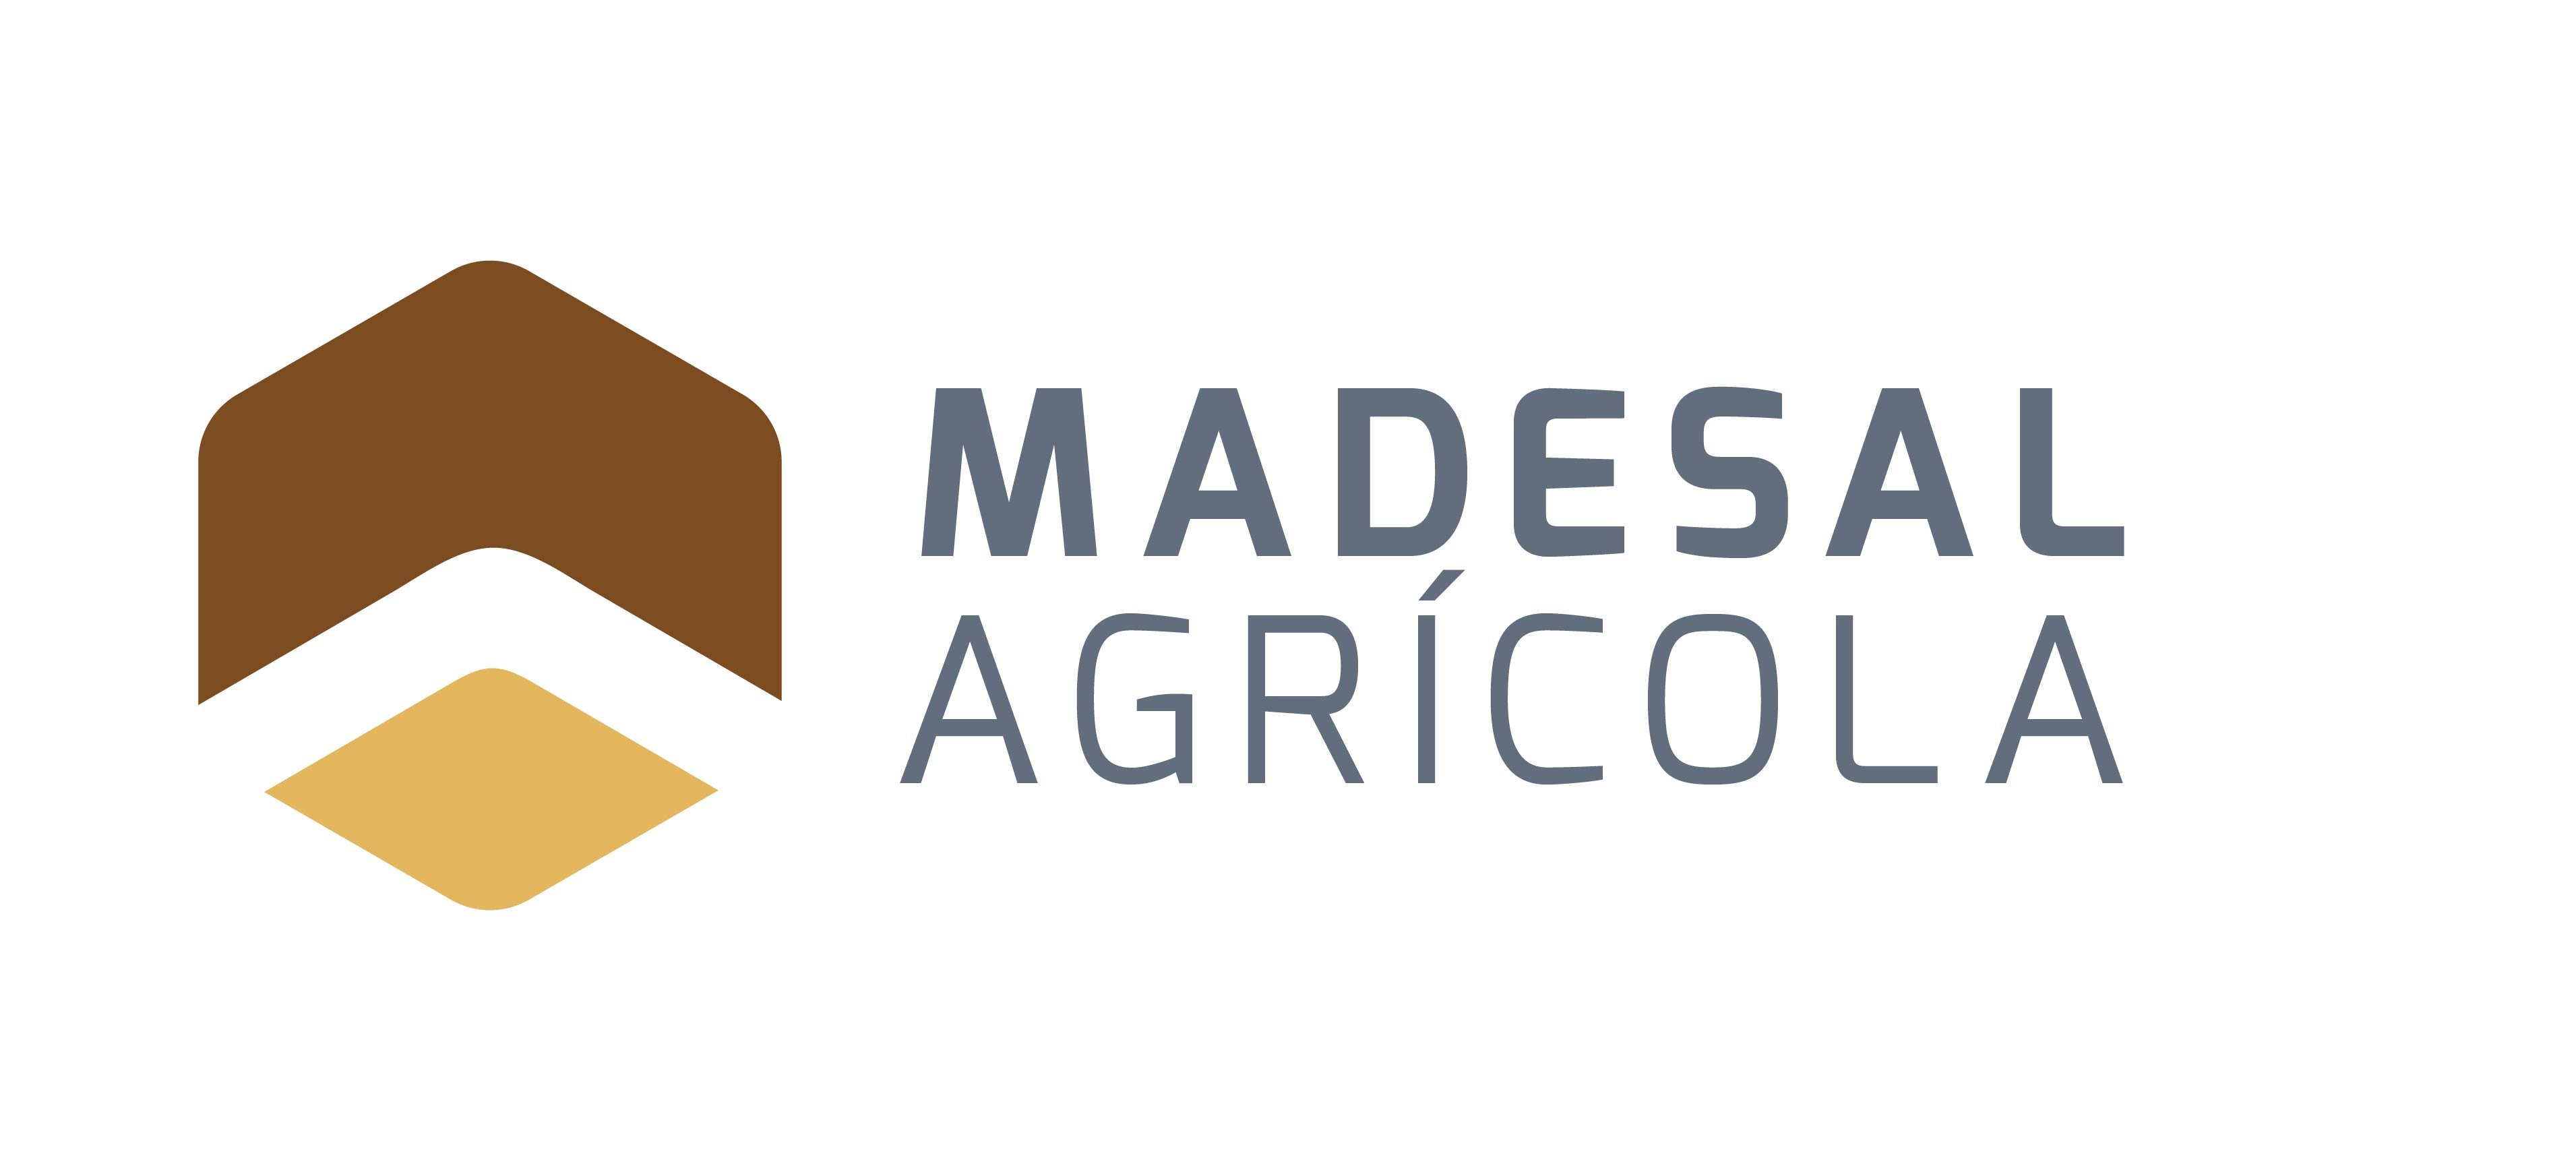 Madesl agrícola_1-1